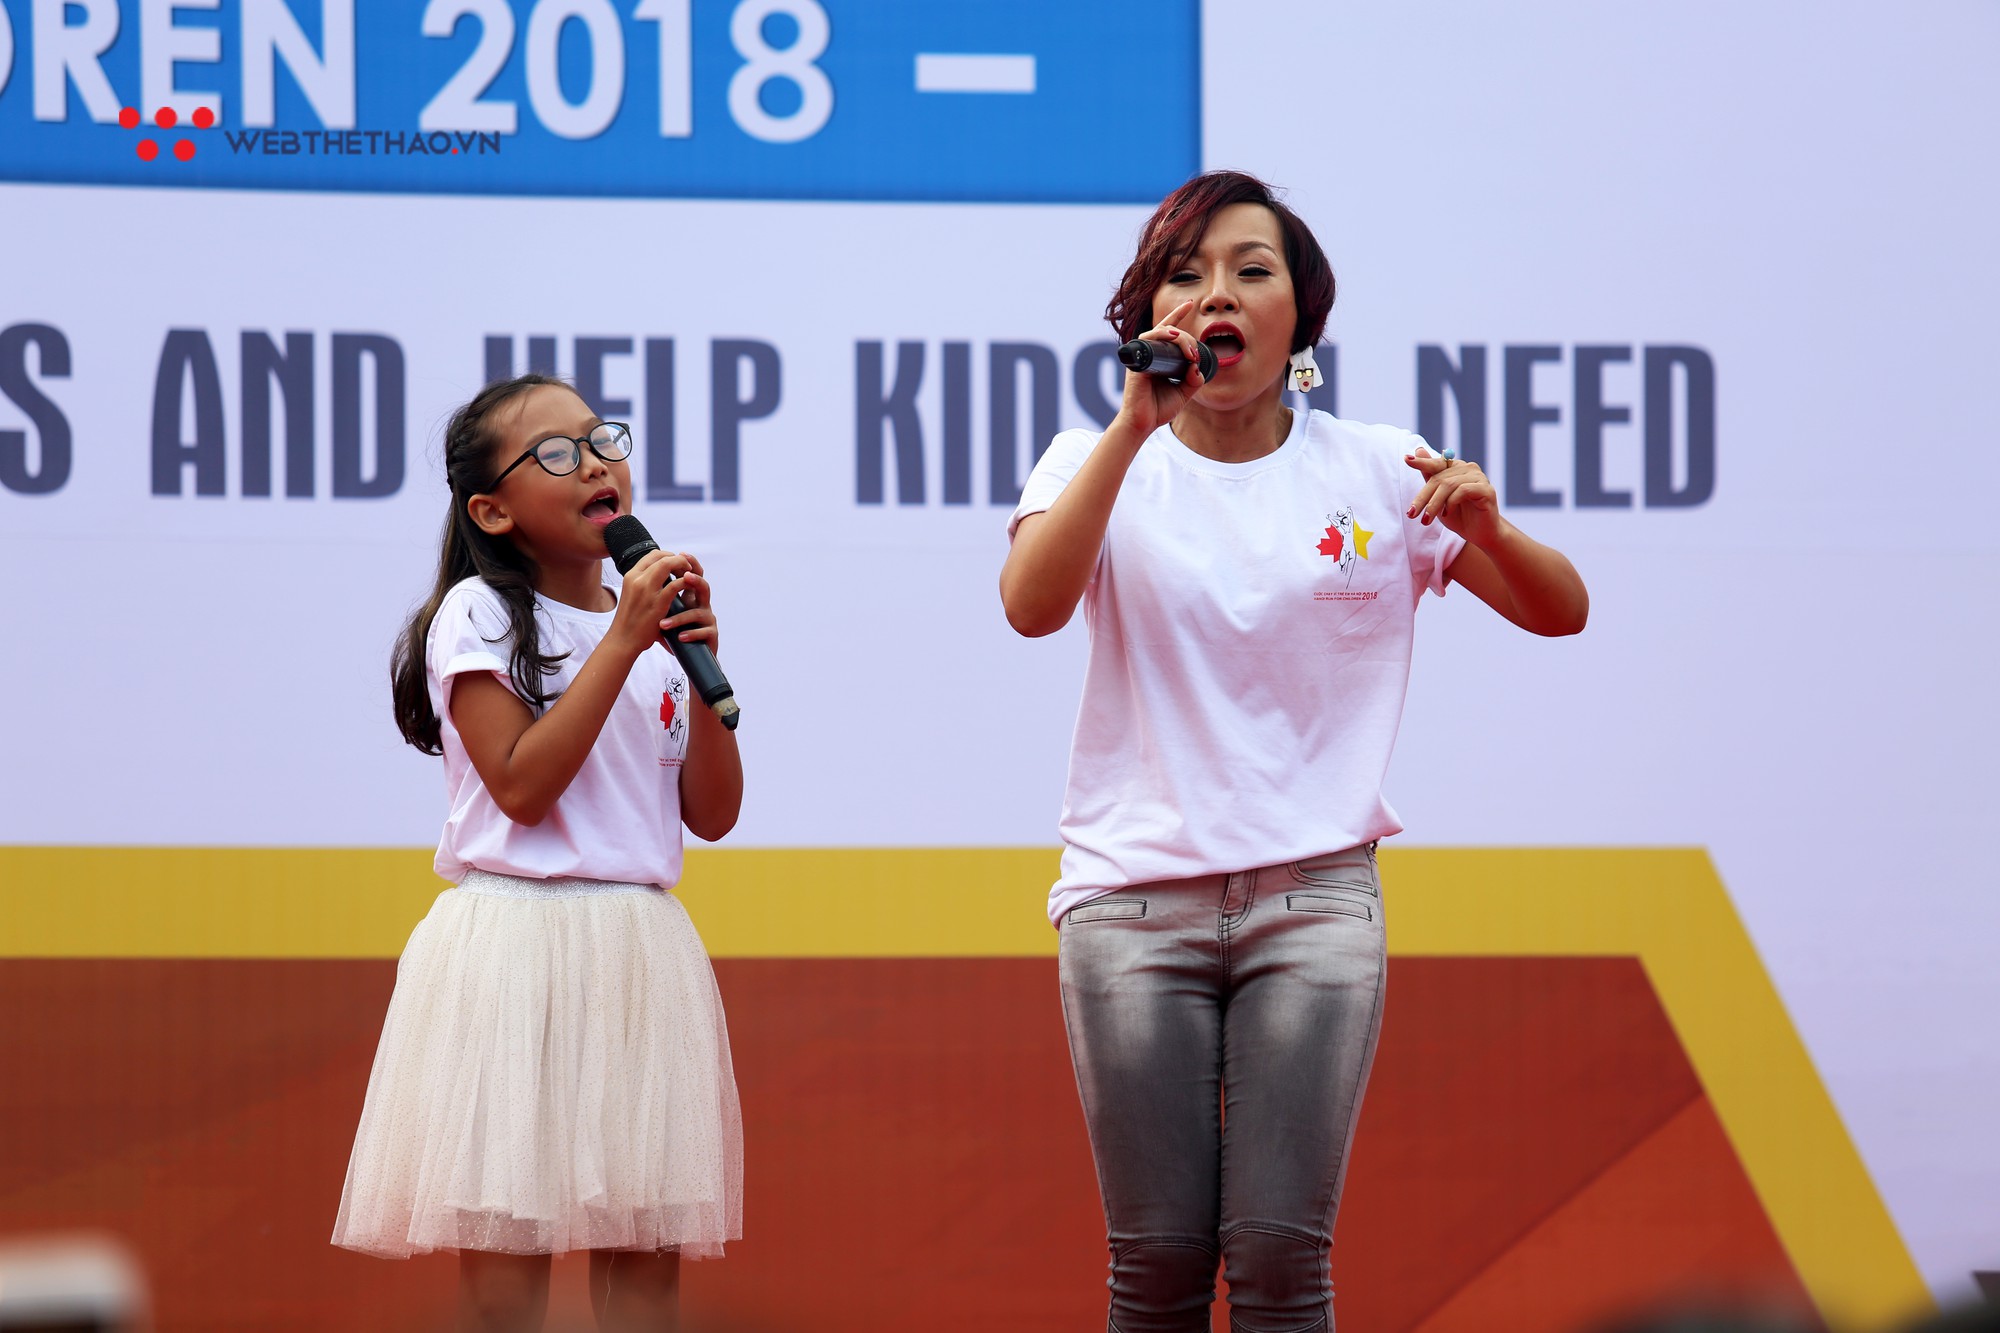 Ca sĩ Thái Thùy Linh, Đức Tuấn ‘quẩy’ nhiệt tình tại Chạy vì trẻ em Hà Nội 2018 - Ảnh 6.